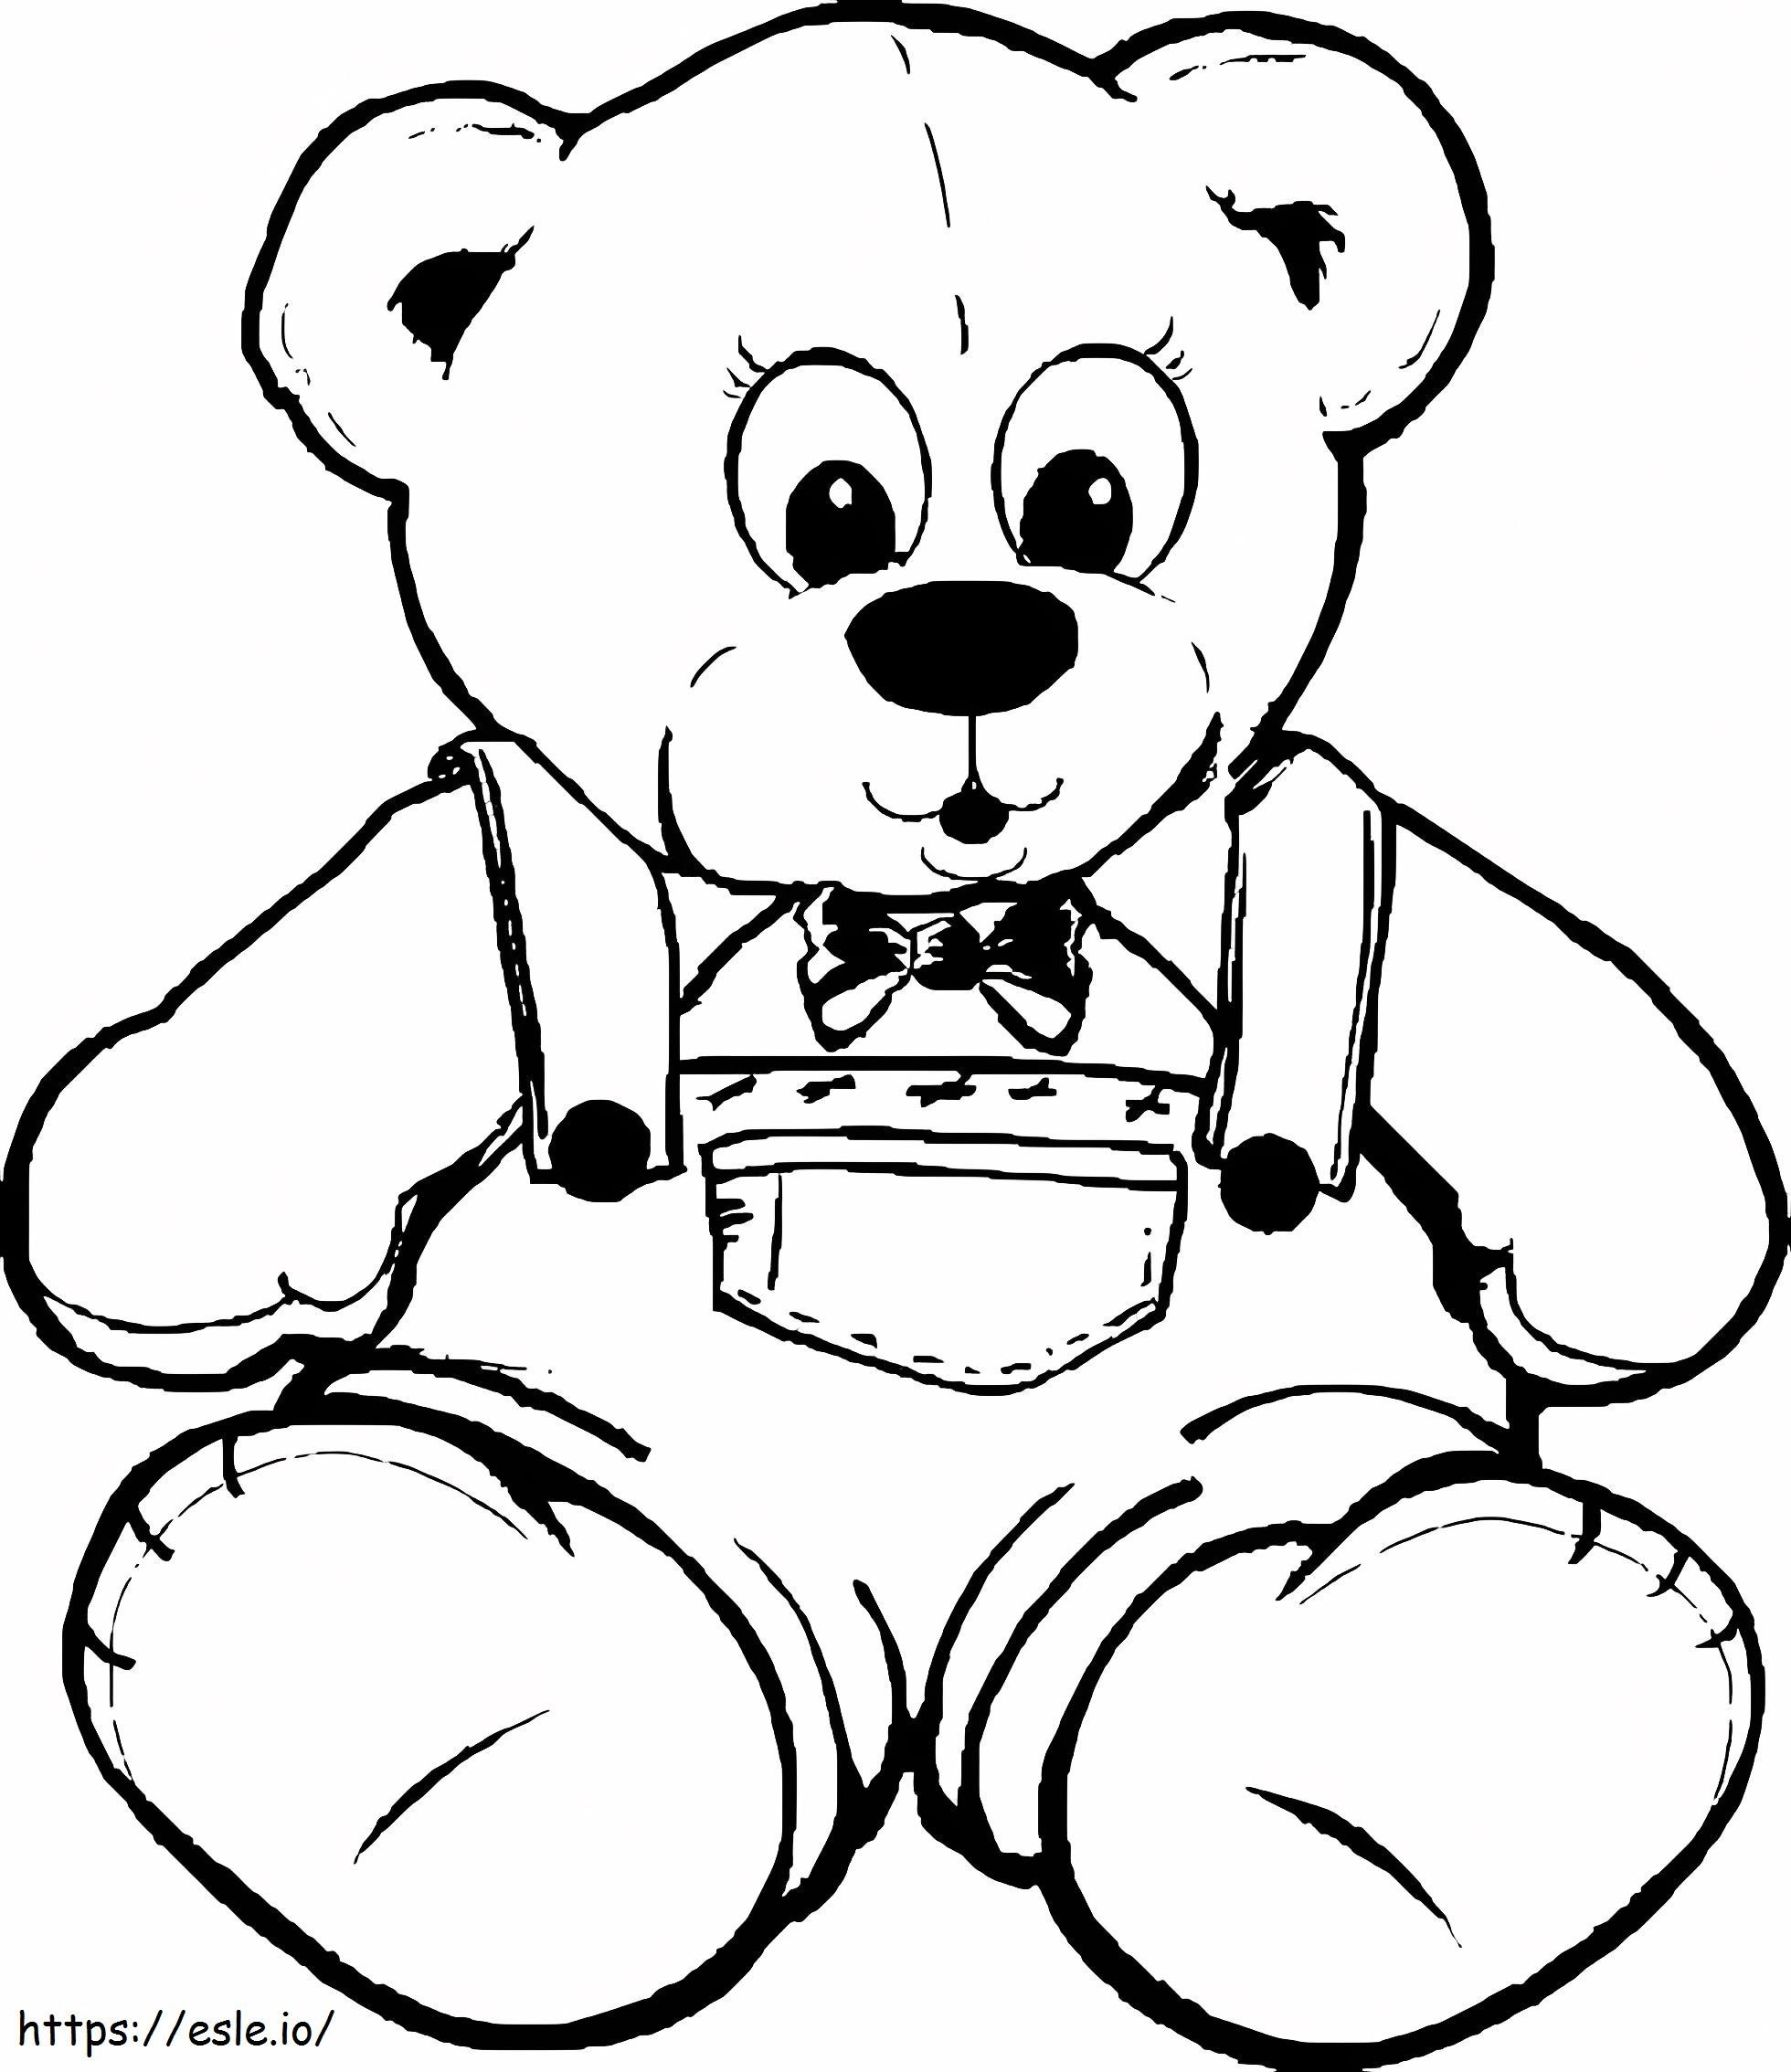 Teddybeer tekening kleurplaat kleurplaat